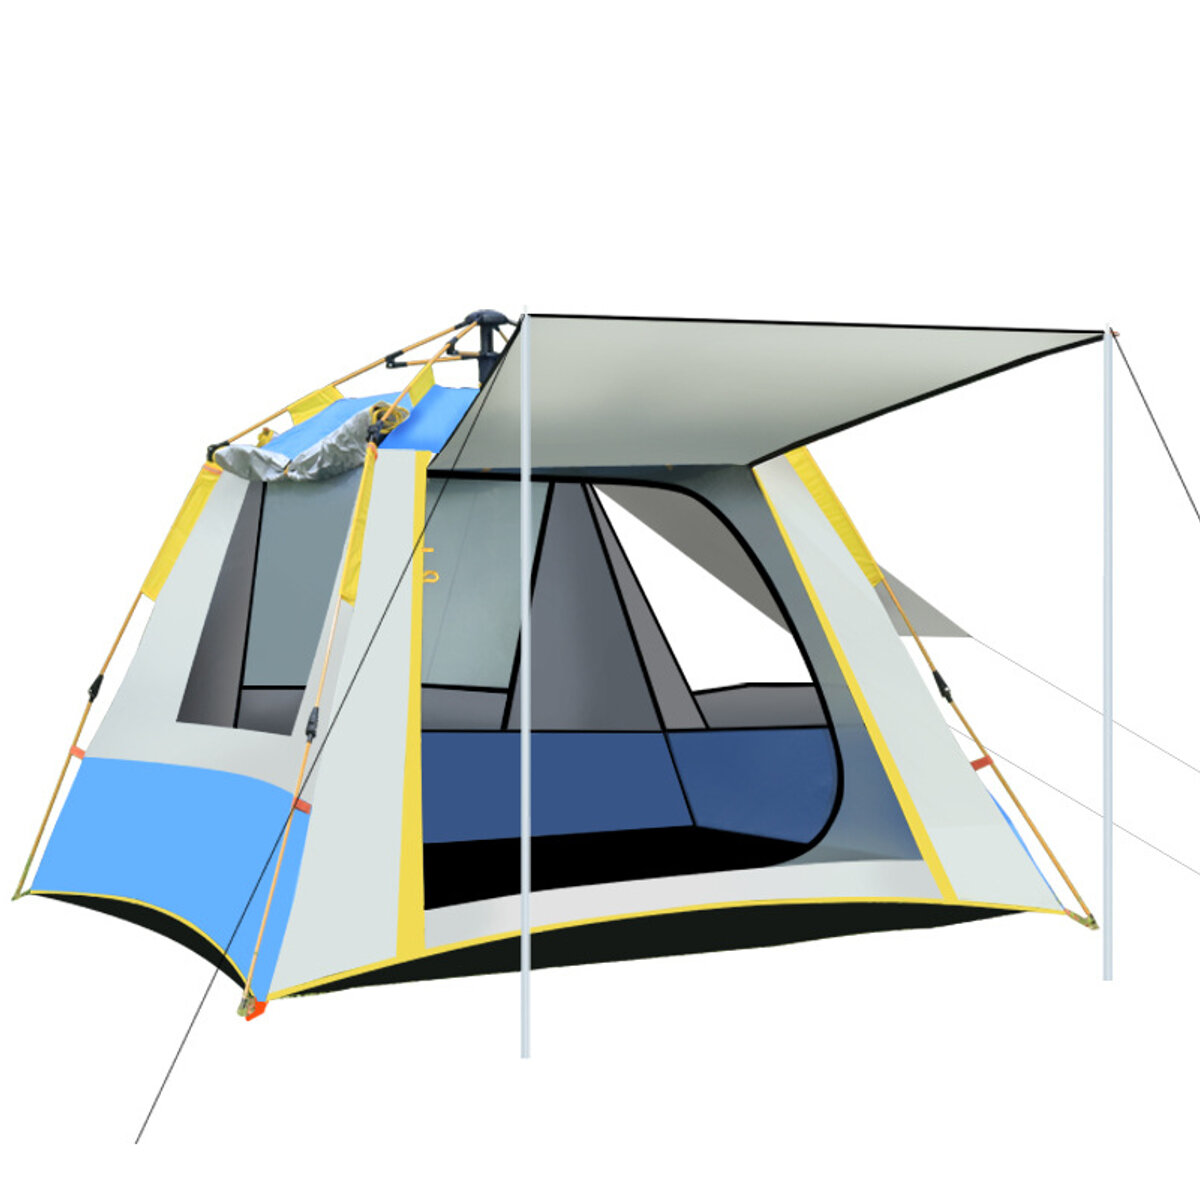 Automatikusan felállítható sátor 5-6 személy számára 3 ablakkal, ideális családi piknikhez és utazáshoz, vízálló és szélálló